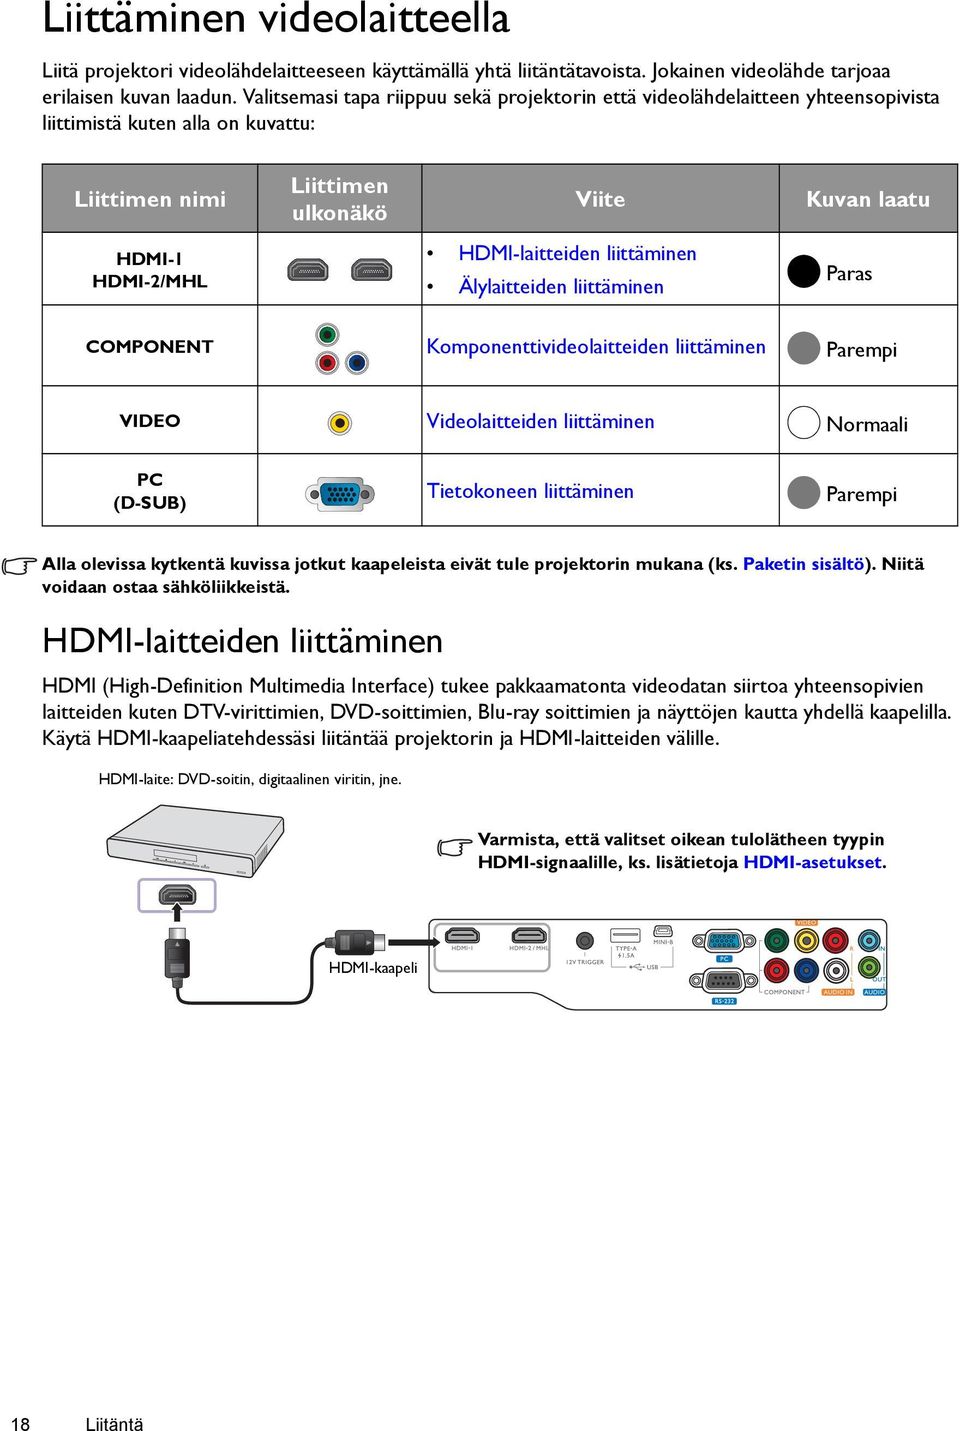 HDMI-laitteiden liittäminen Älylaitteiden liittäminen Paras COMPONENT Komponenttivideolaitteiden liittäminen Parempi VIDEO Videolaitteiden liittäminen Normaali PC (D-SUB) Tietokoneen liittäminen